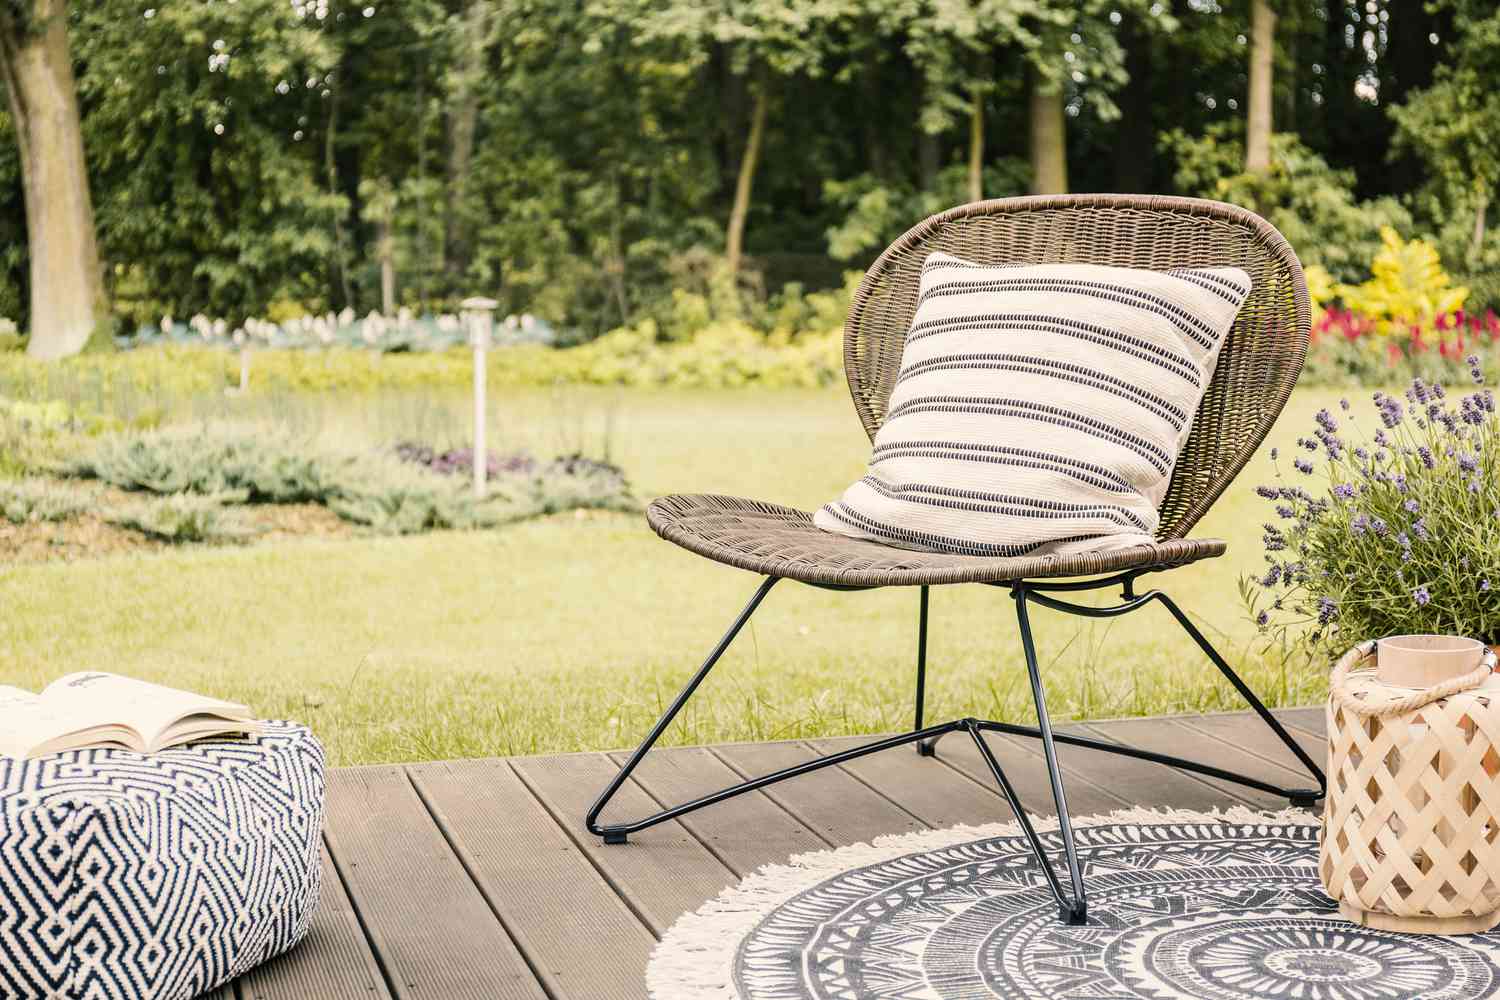 Foto real de uma cadeira de jardim moderna com um travesseiro listrado branco em um deck de madeira no jardim de um retiro de fim de semana